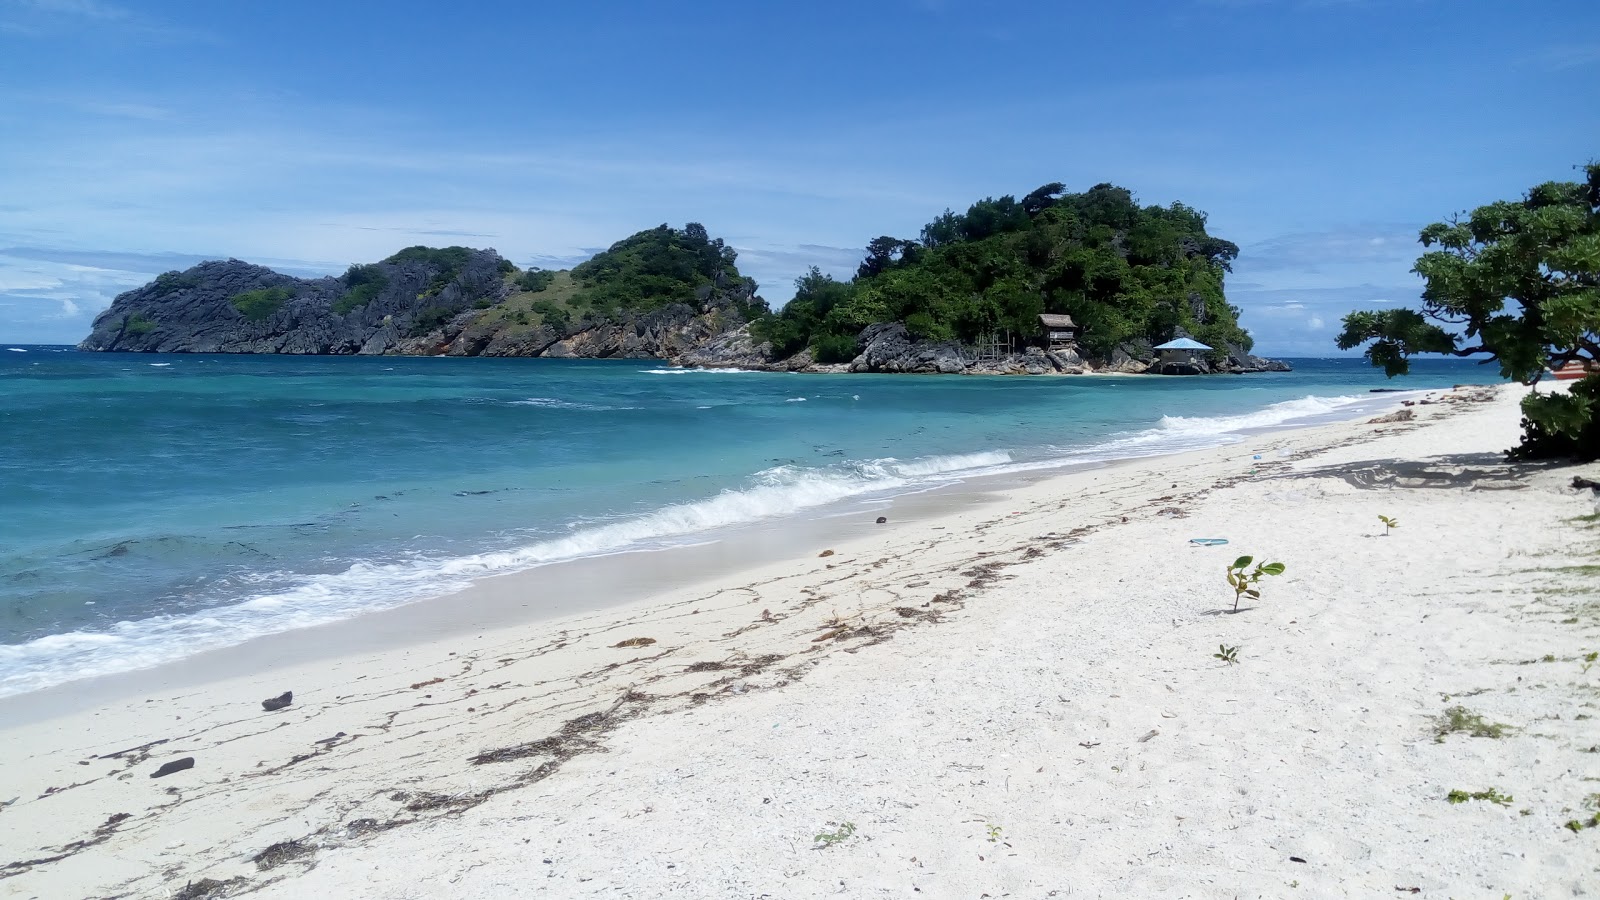 Foto af Buyayao Island Resort - populært sted blandt afslapningskendere